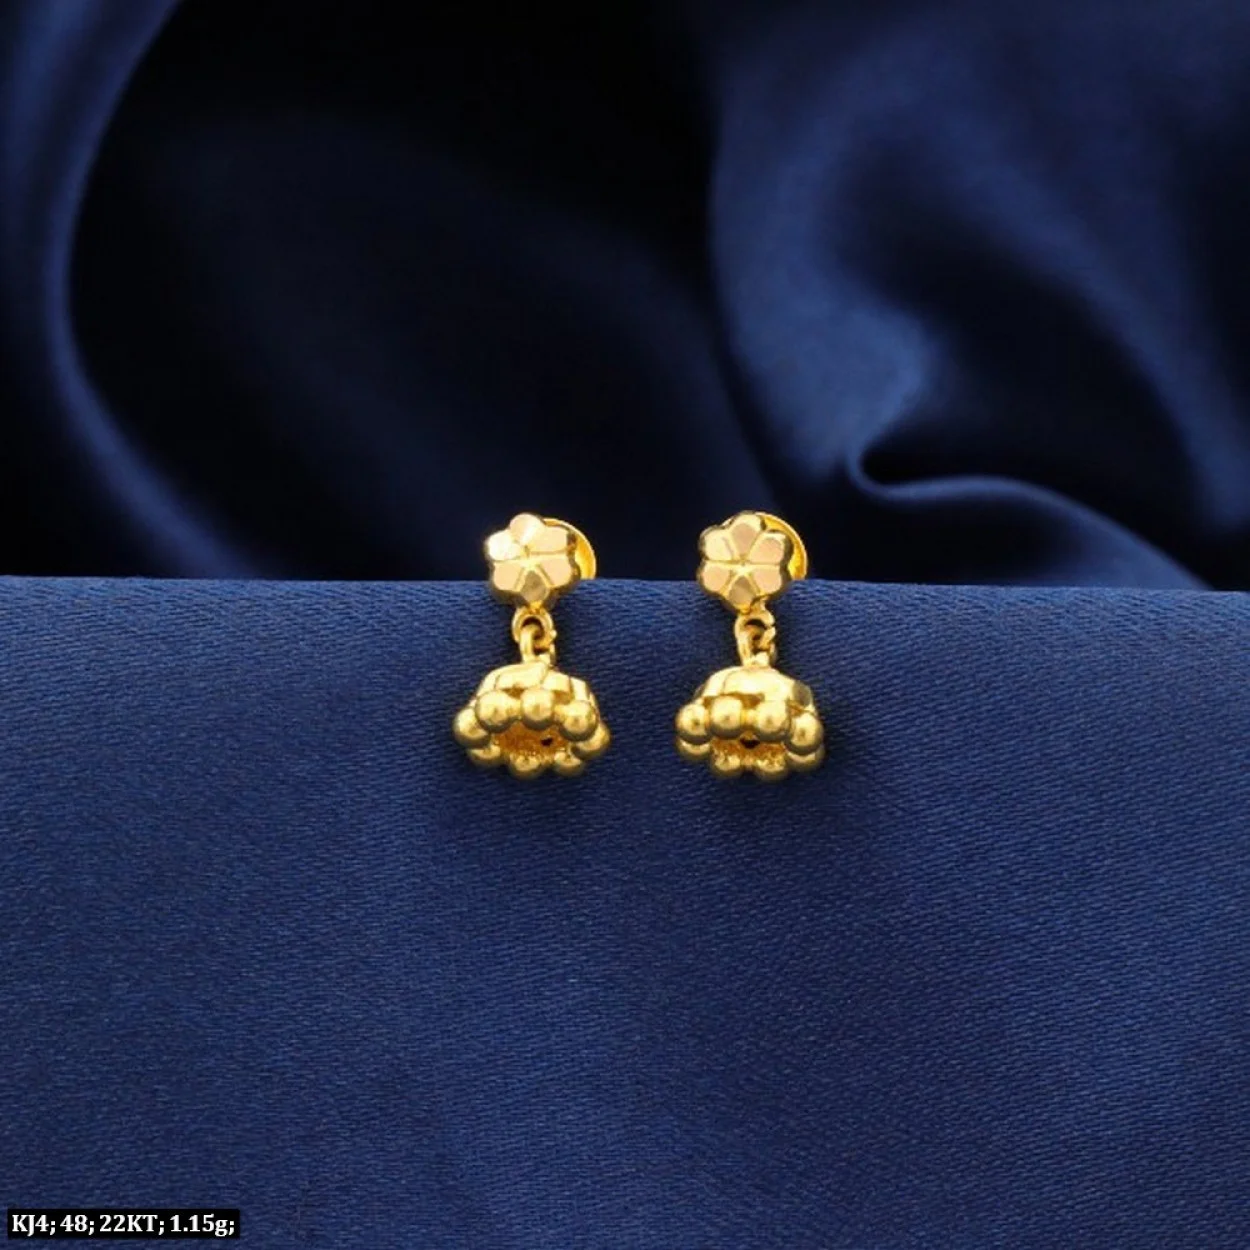 Bezel Set Diamond Stud Earrings | Helen Ficalora